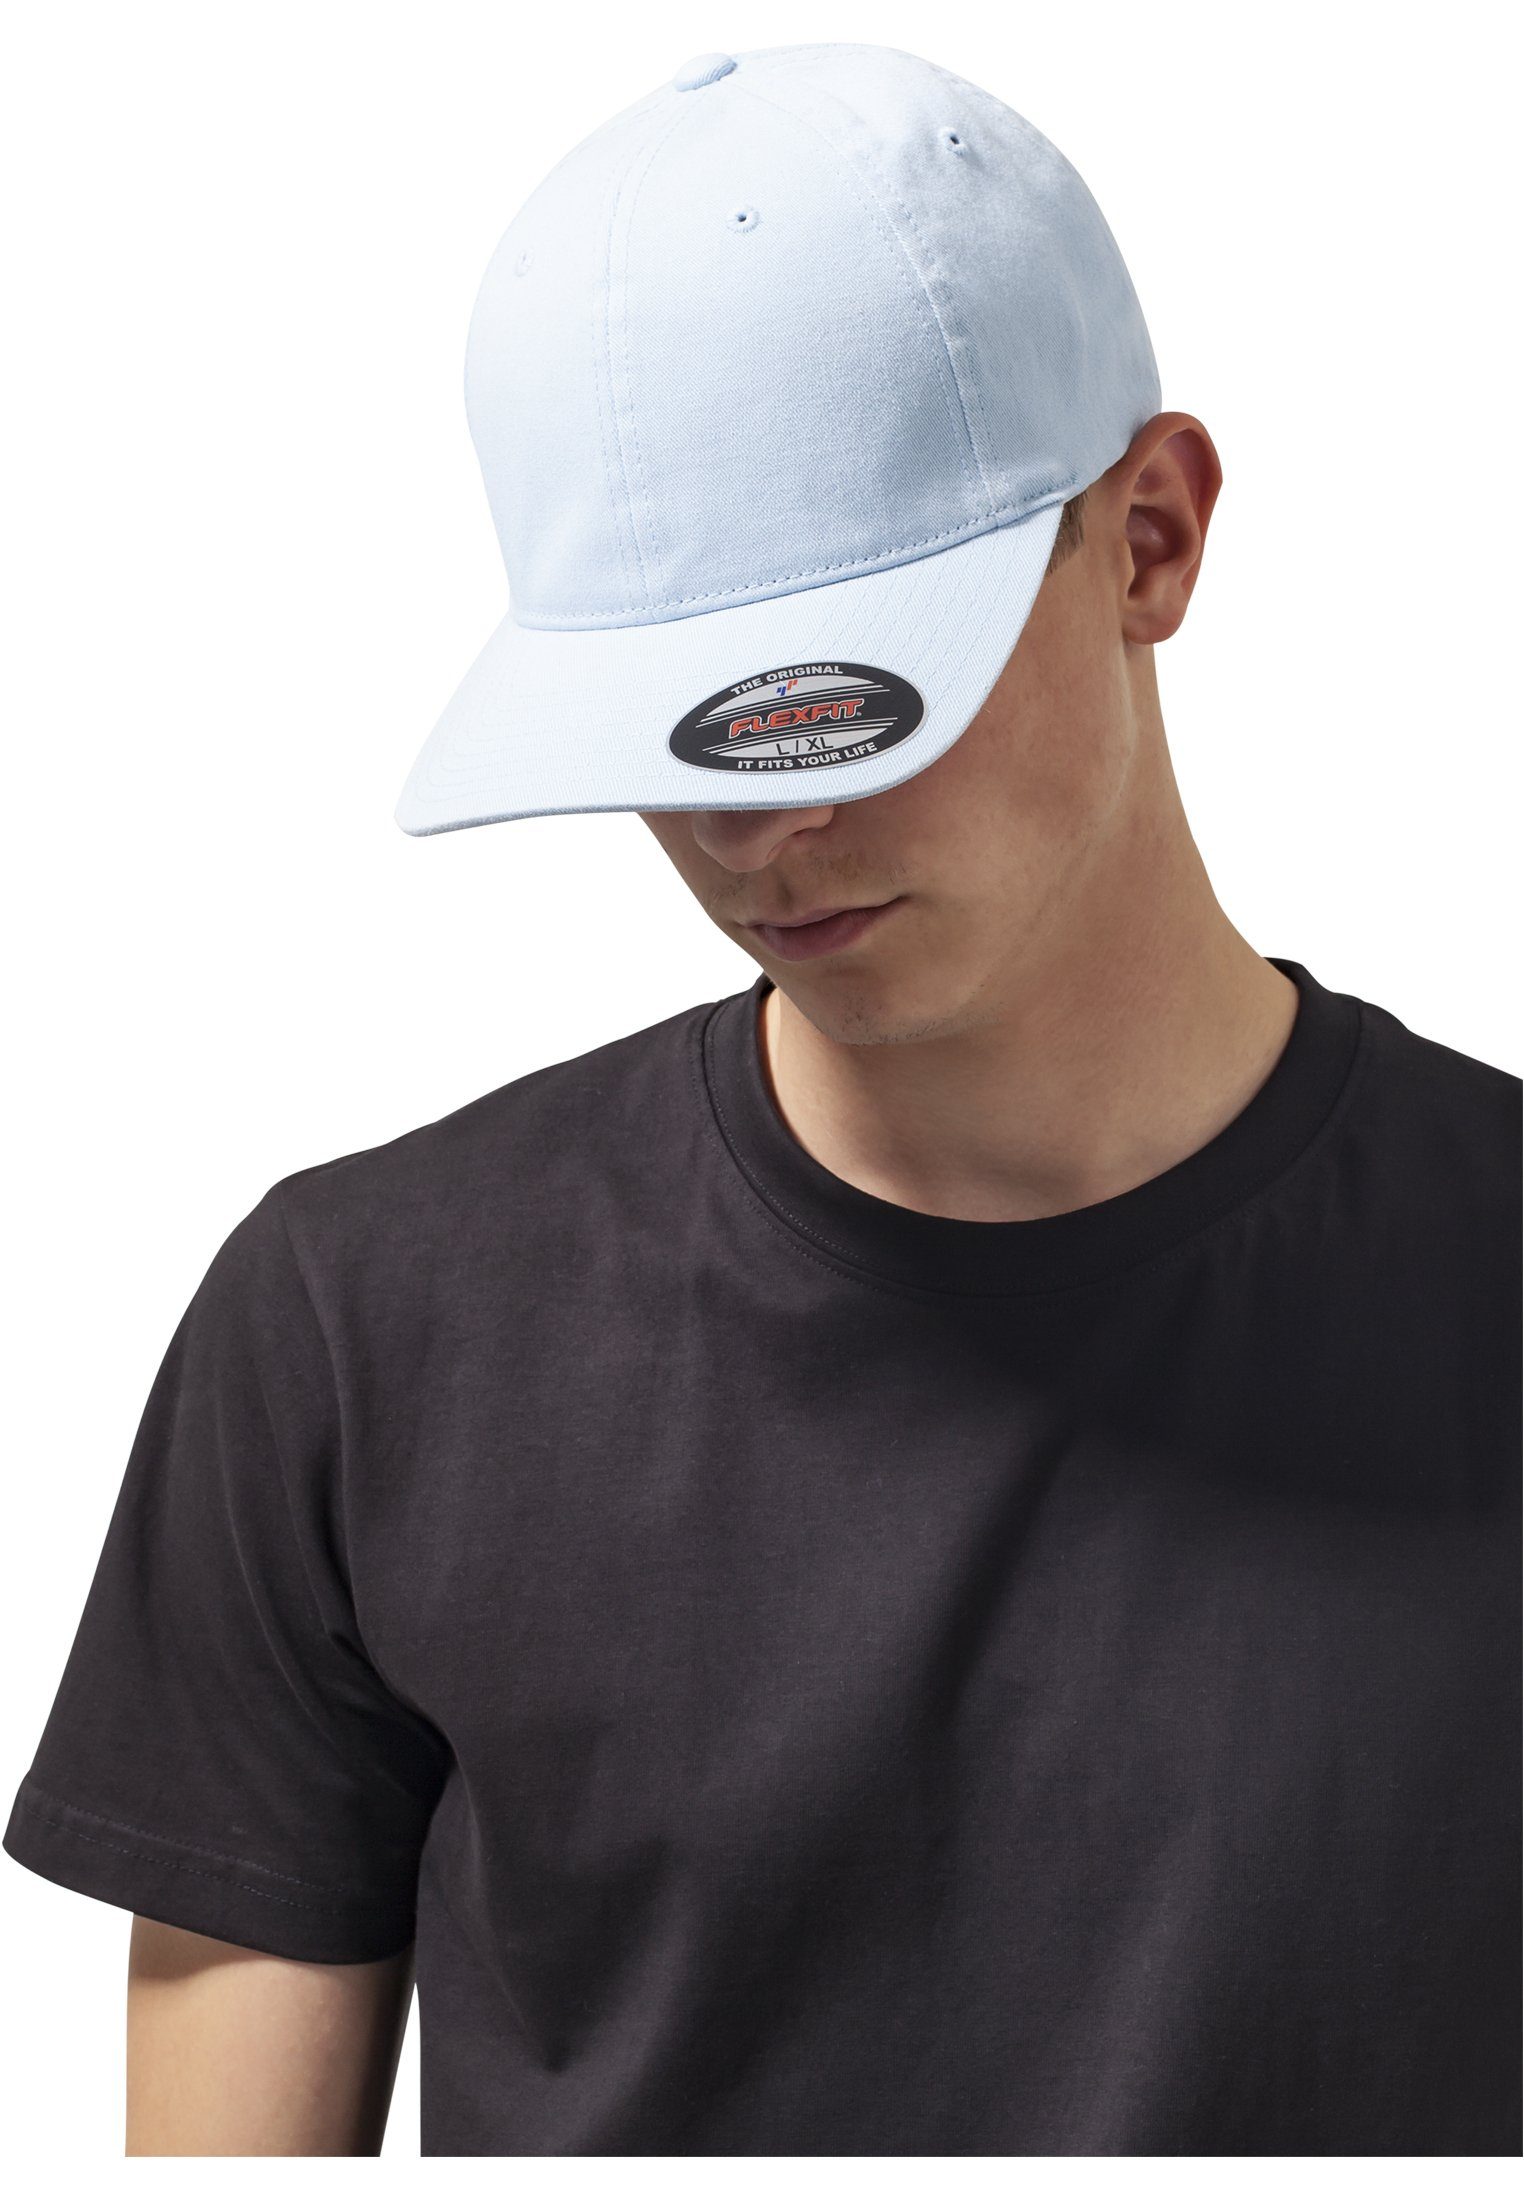 Washed Garment Cap Flexfit Flexfit Cotton Flex lightblue Accessoires Dad Hat